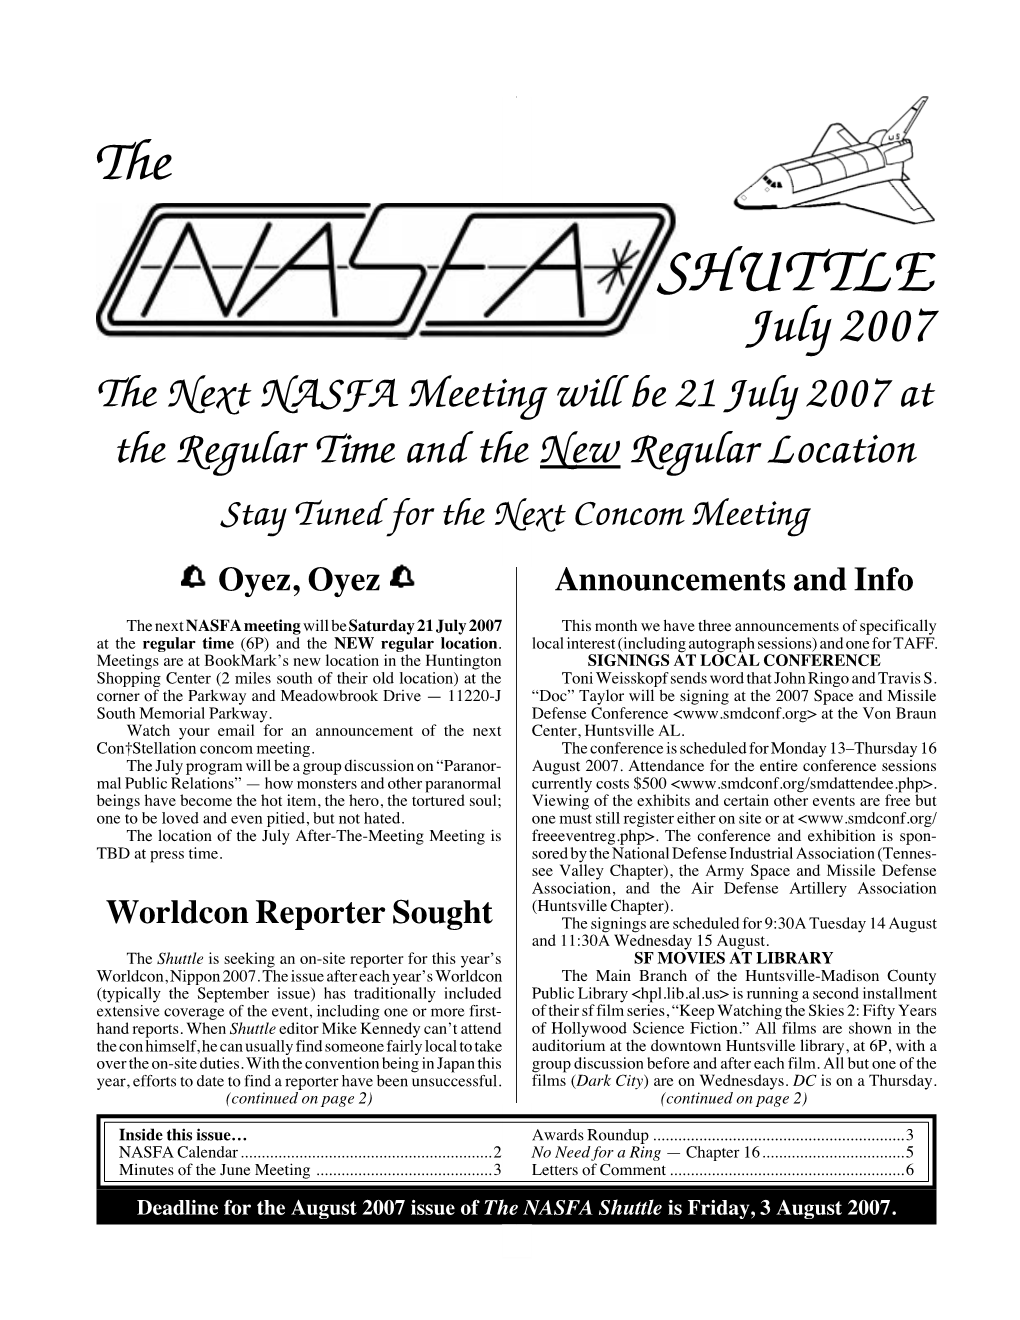 NASFA 'Shuttle' Jul 2007